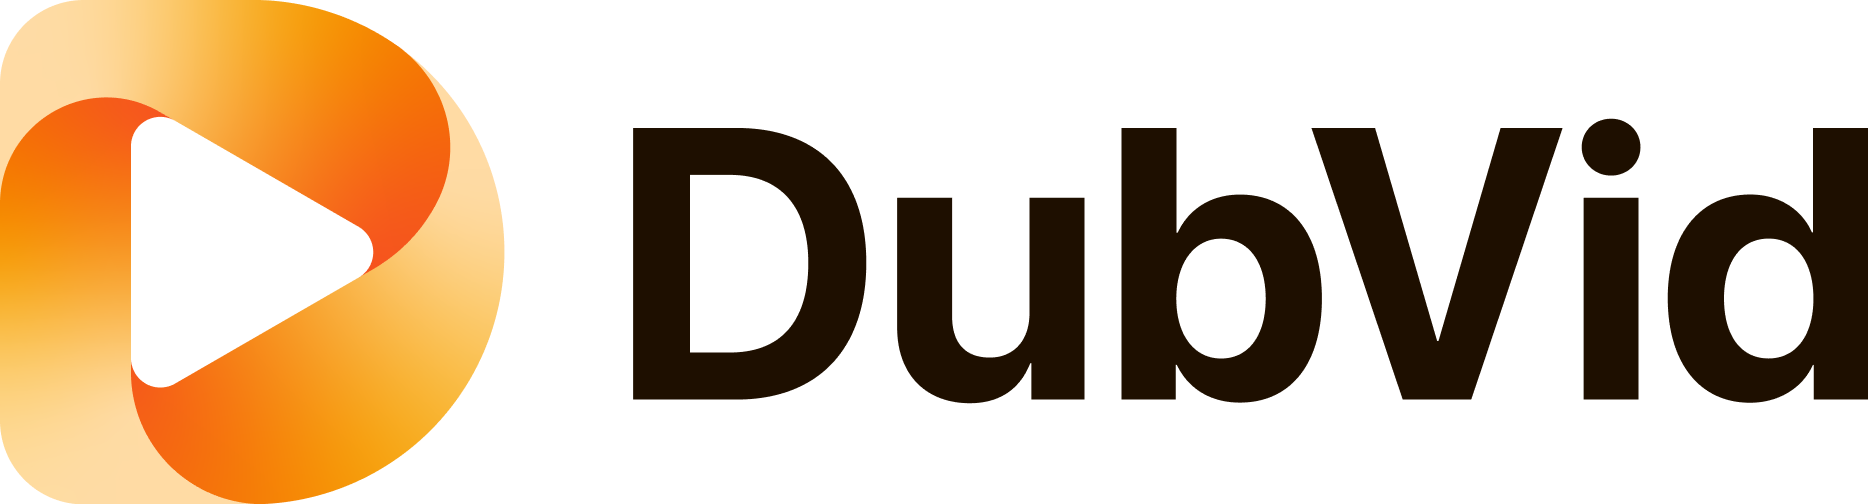 DubVid - Logo